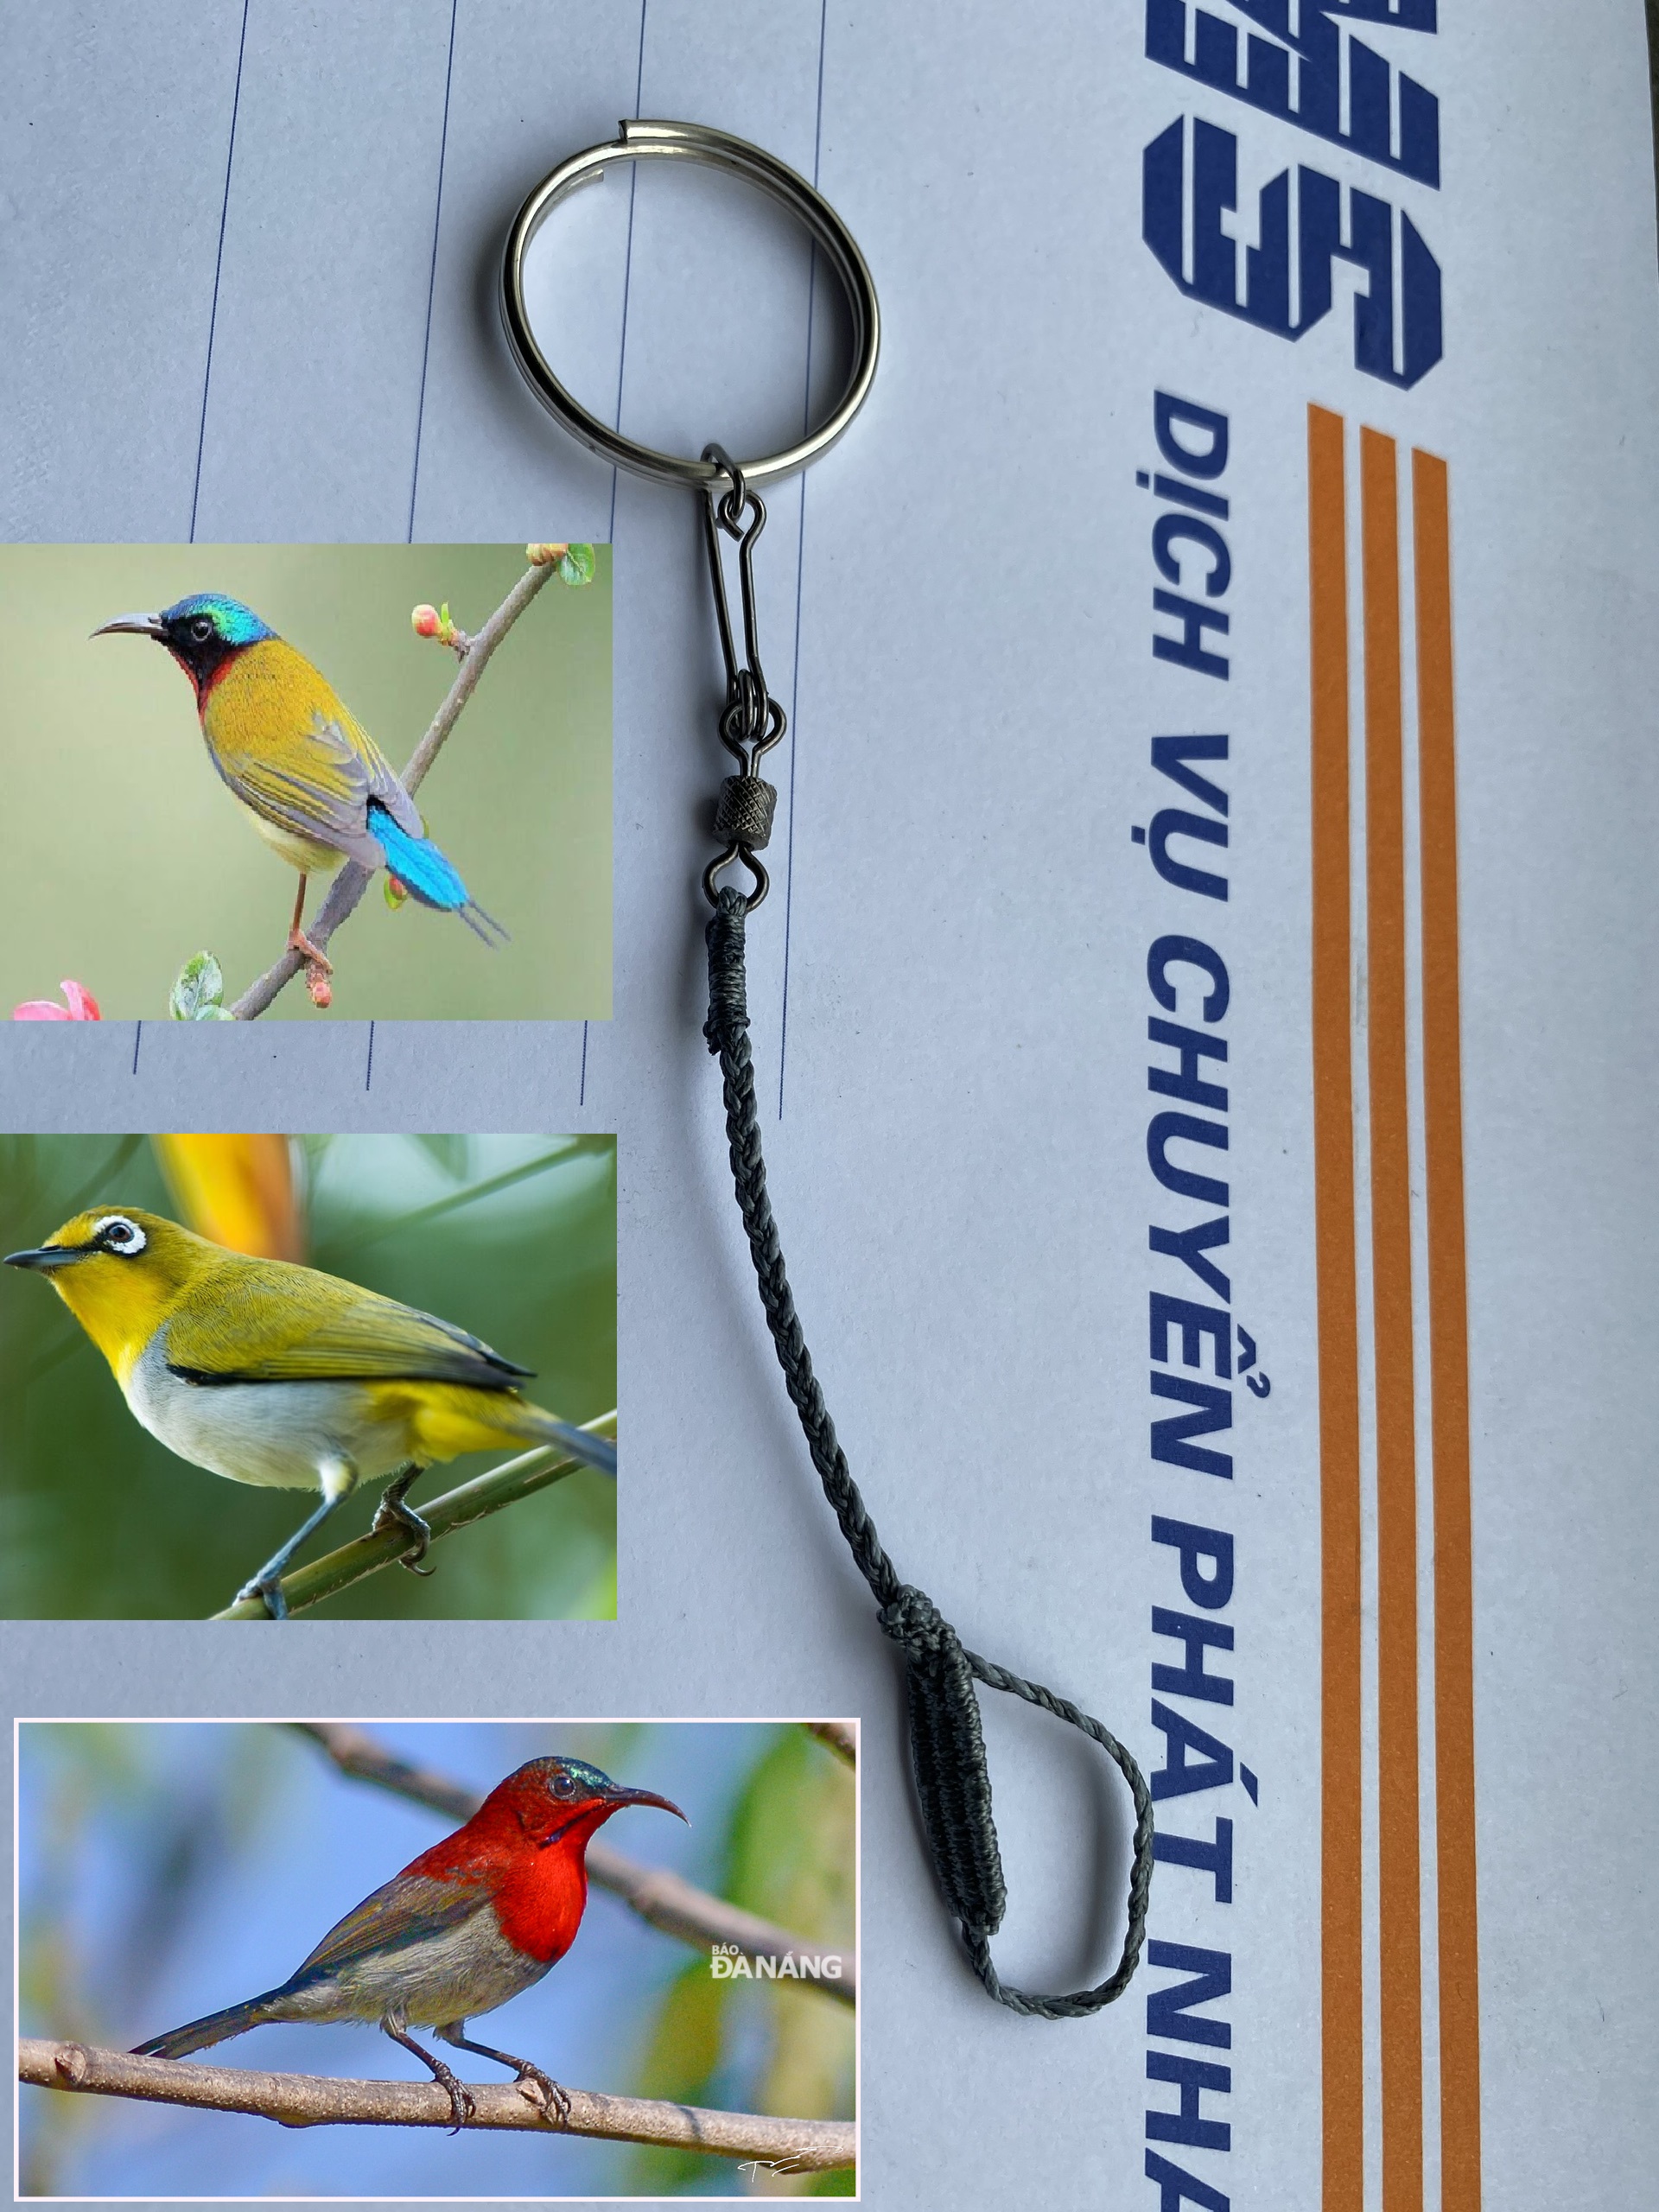 Hướng dẫn lựa và nuôi chim vành khuyên cơ bản | Farmvina Thú Cưng